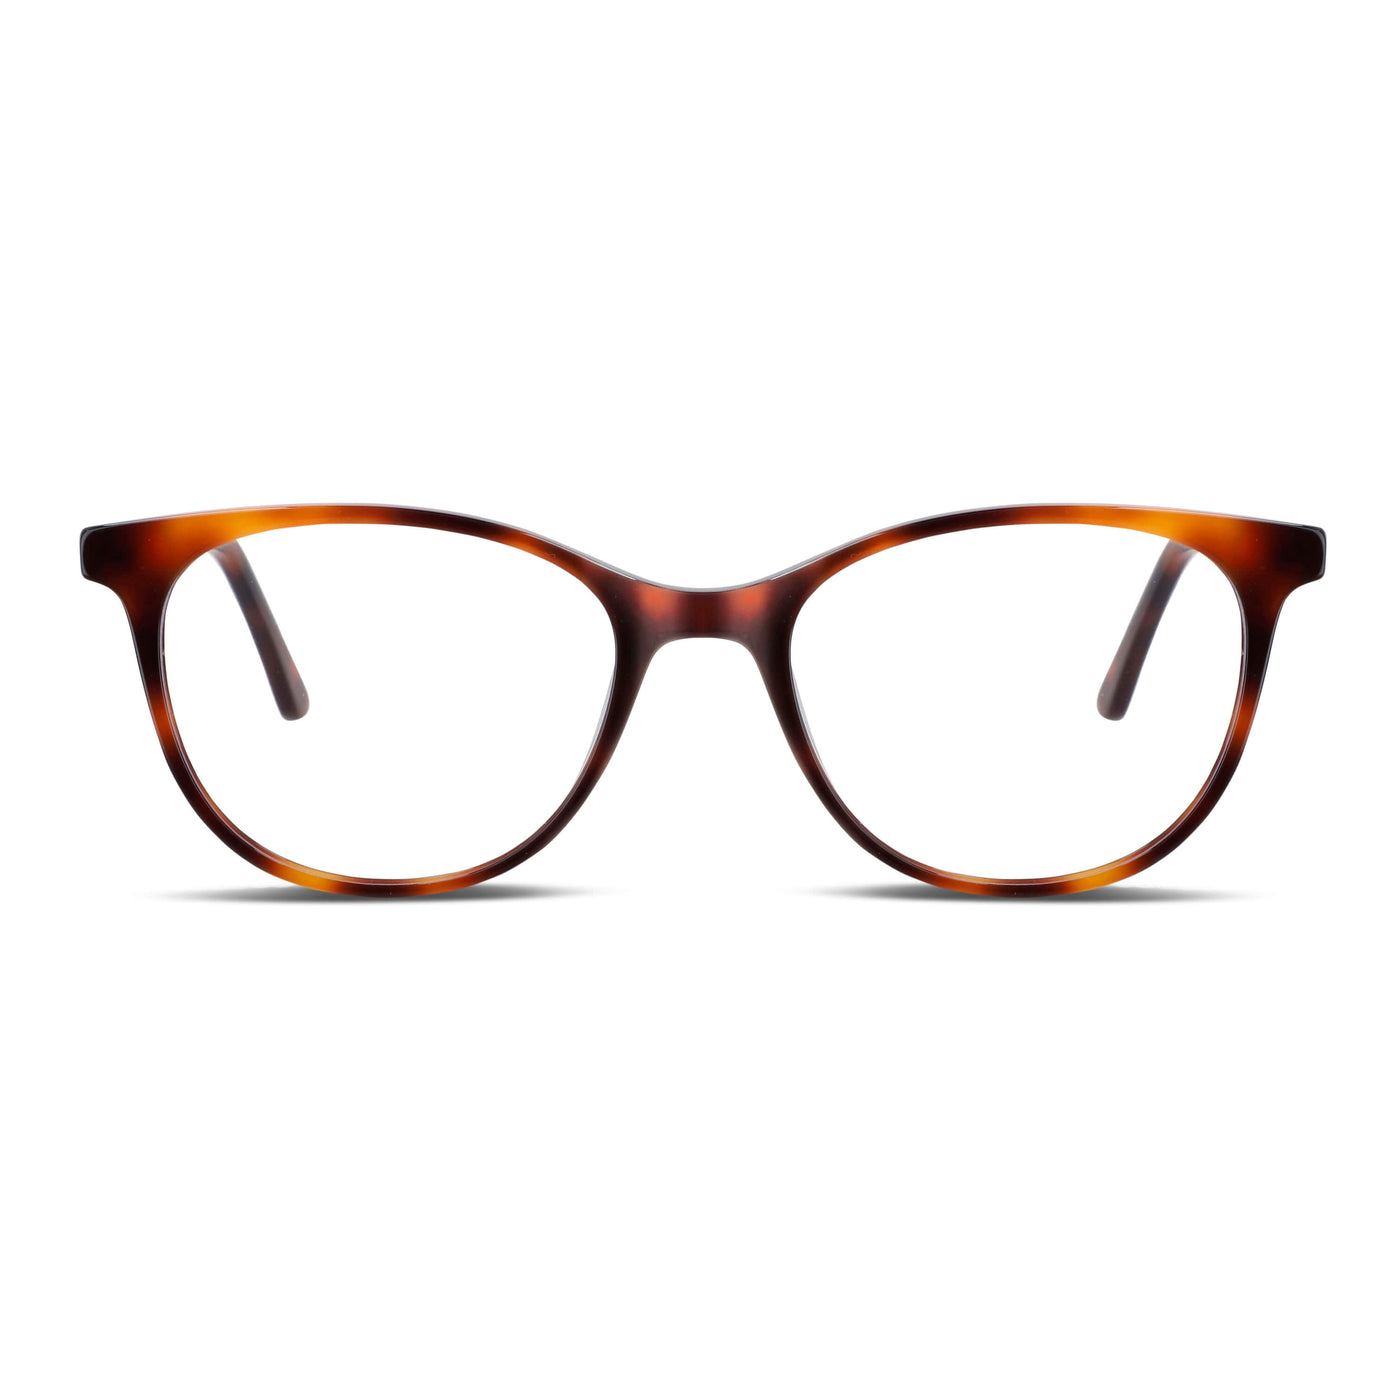  lentes agatados negros mujer cara redonda opticos multifocales bifocales receta mayorista distribuidor sustentables.jpg